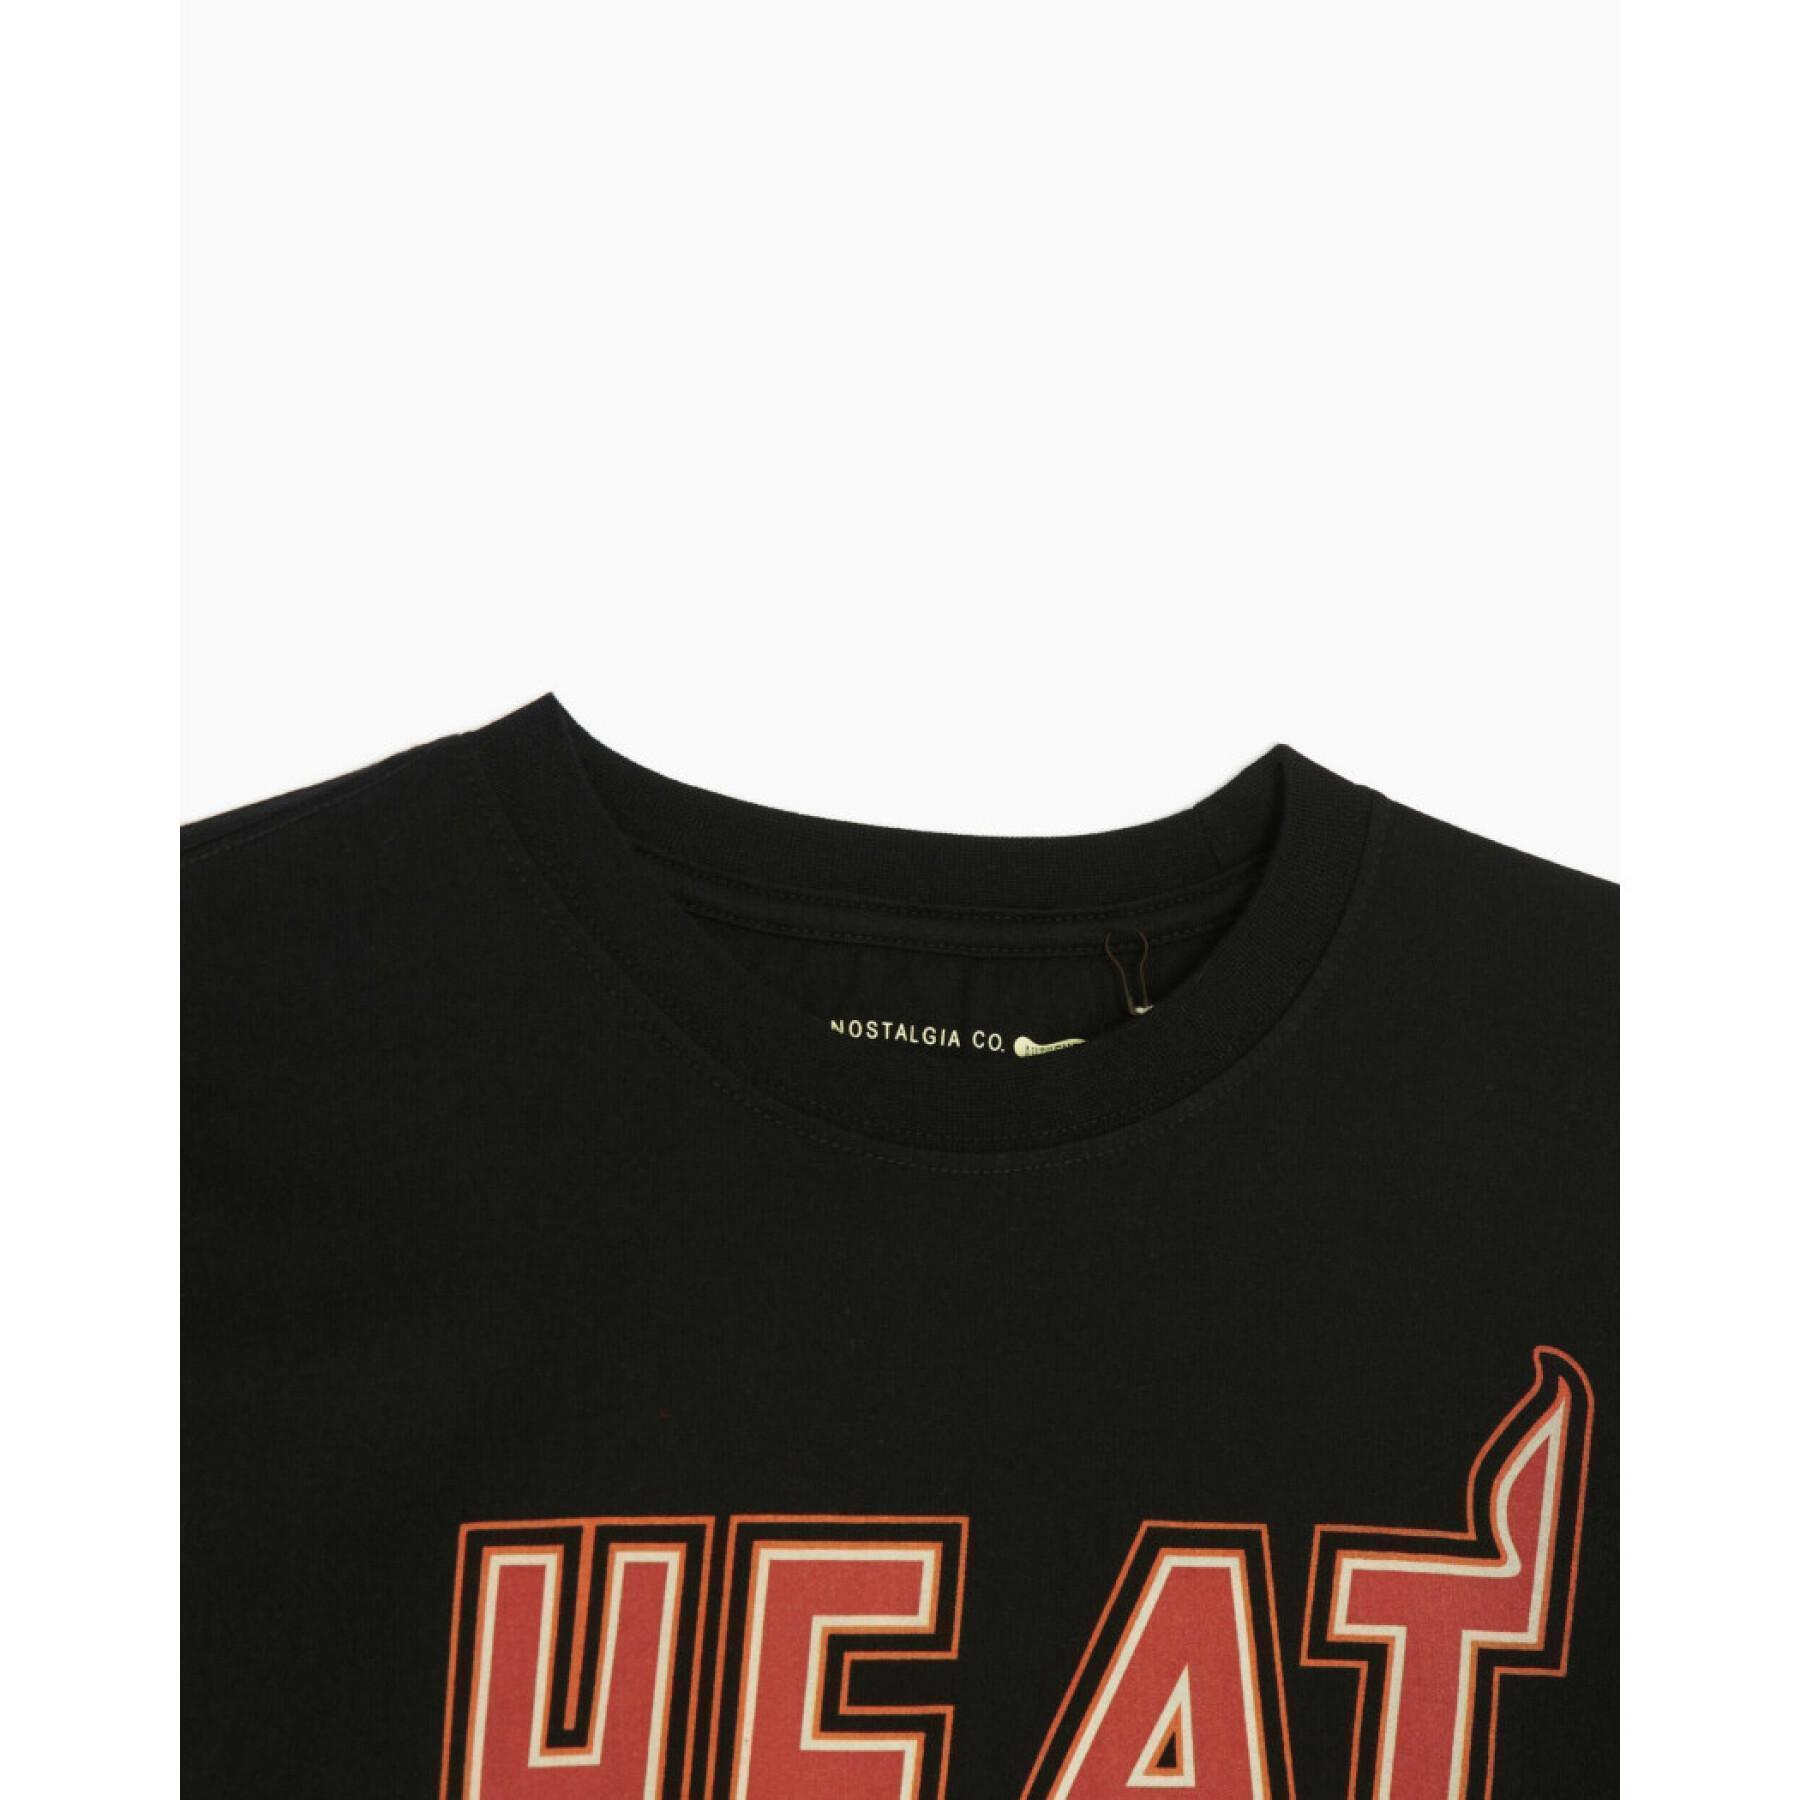 Maglietta Miami Heat